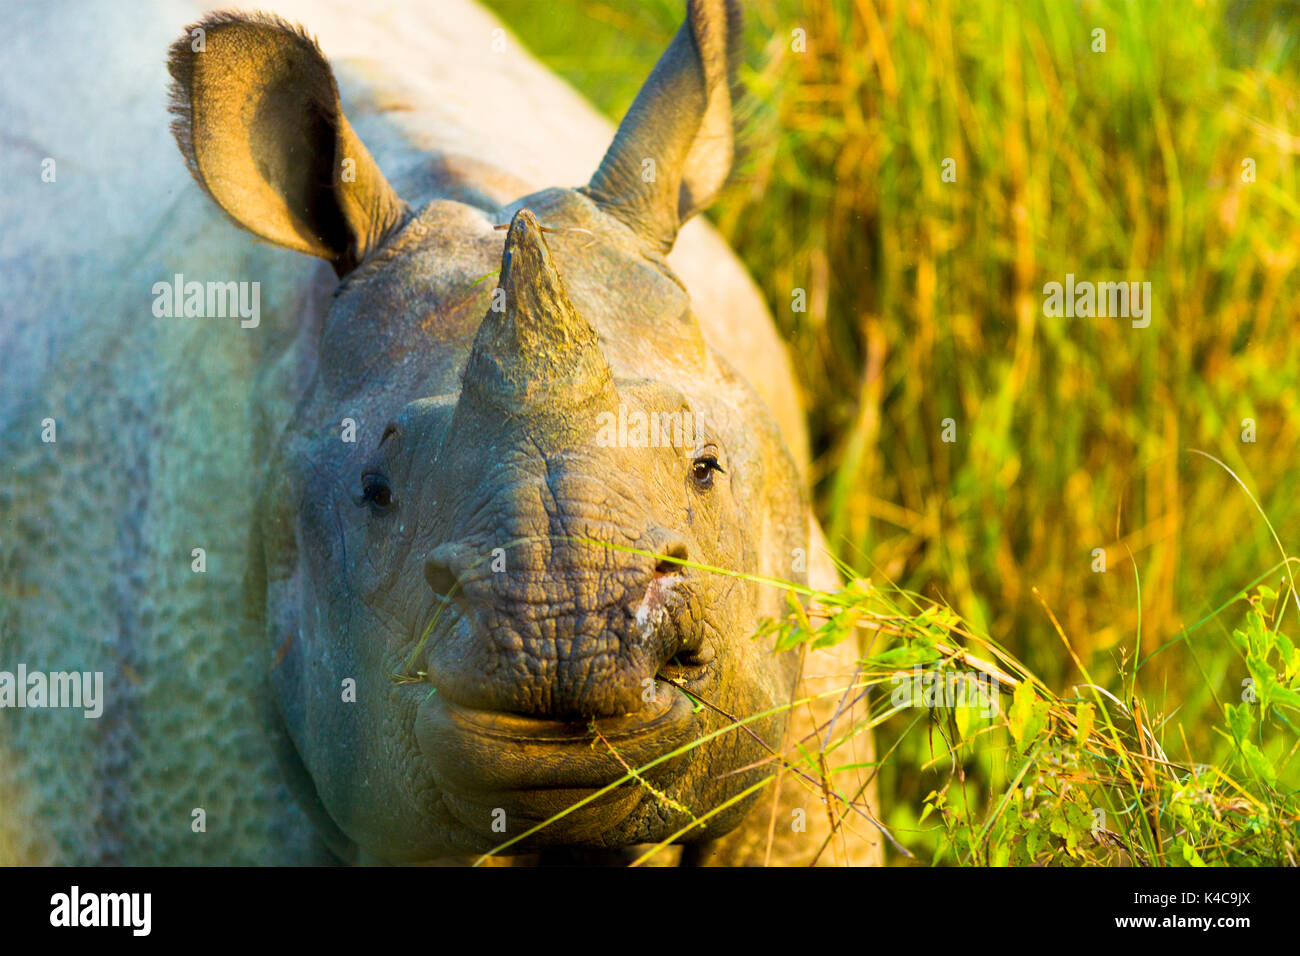 Faccia frontale vista in via di estinzione di un corno di rinoceronte indiano nel suo habitat naturale a Chitwan il parco nazionale, il Nepal Foto Stock